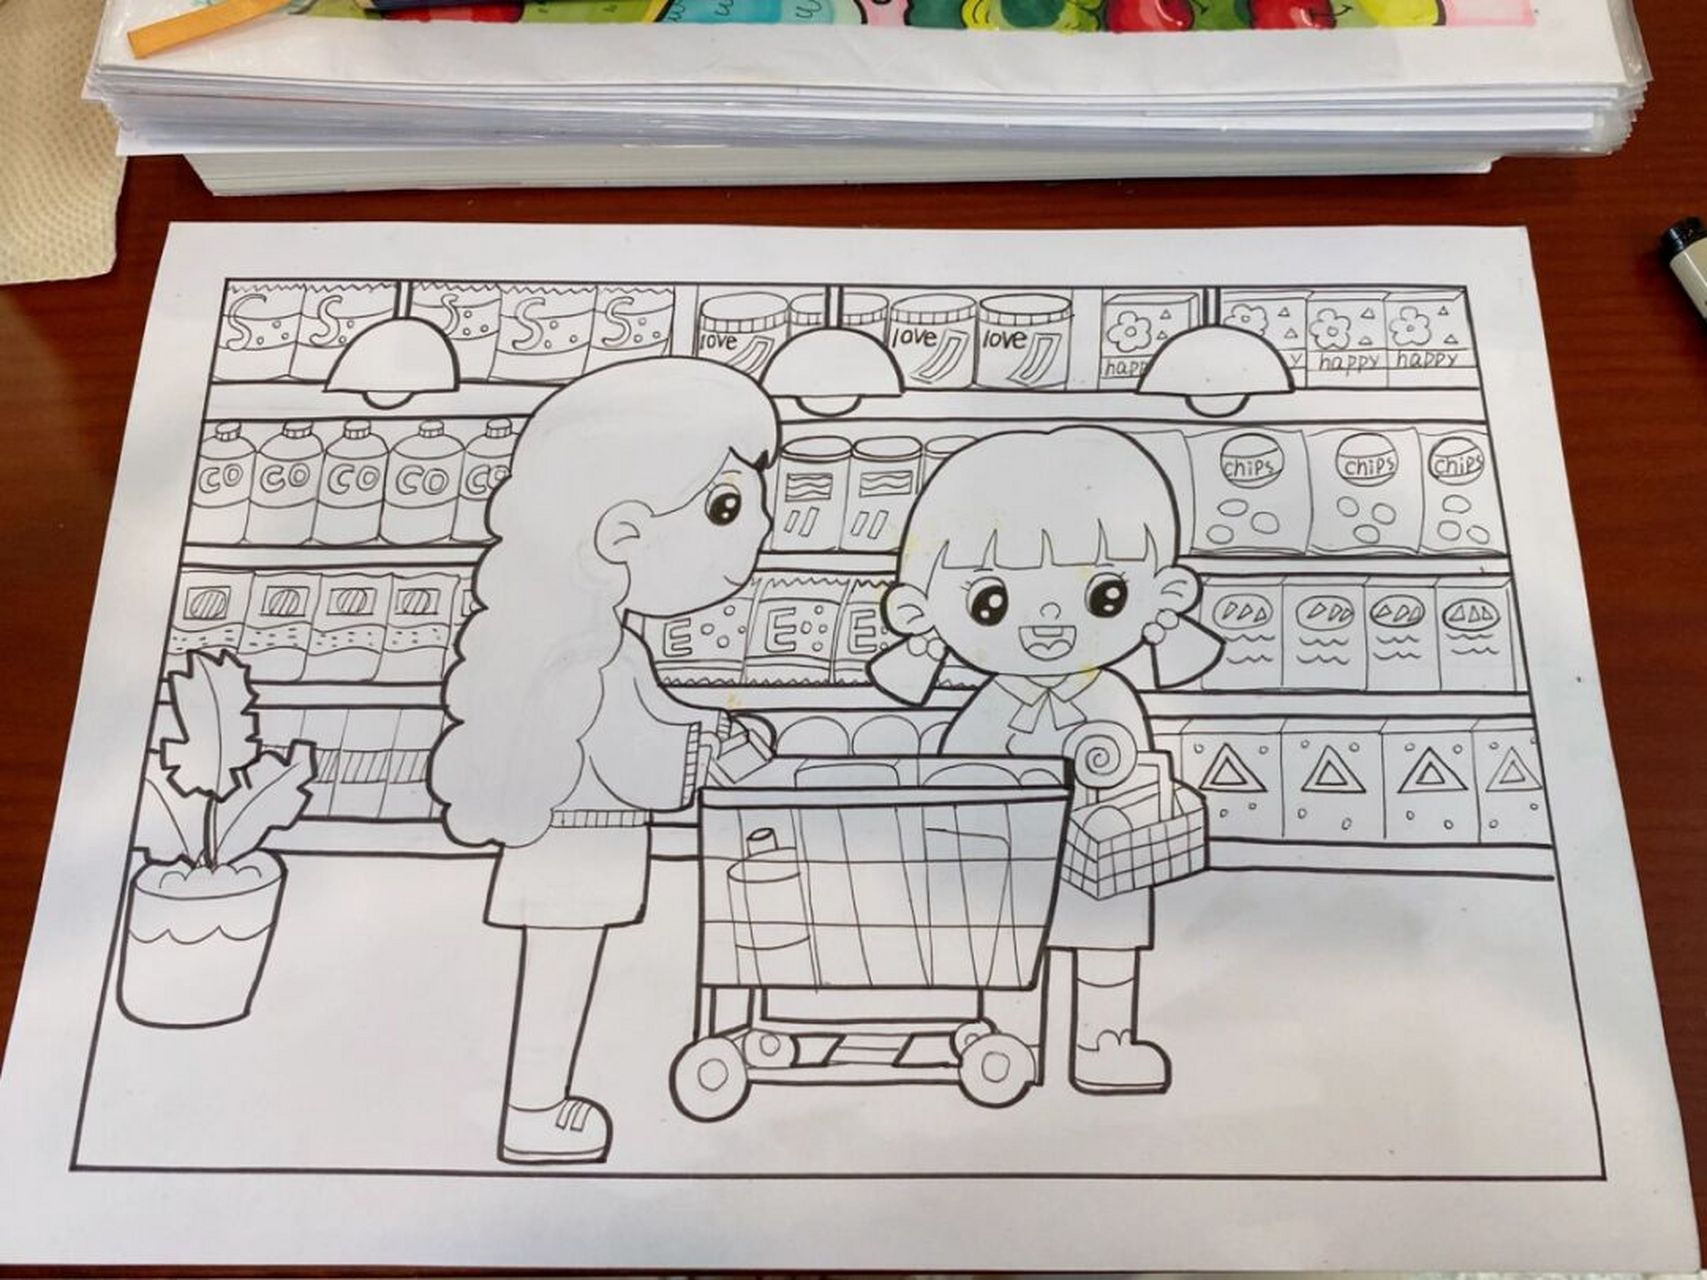 00儿童画/《逛超市》           大家临摹的话,可以试着改改颜色